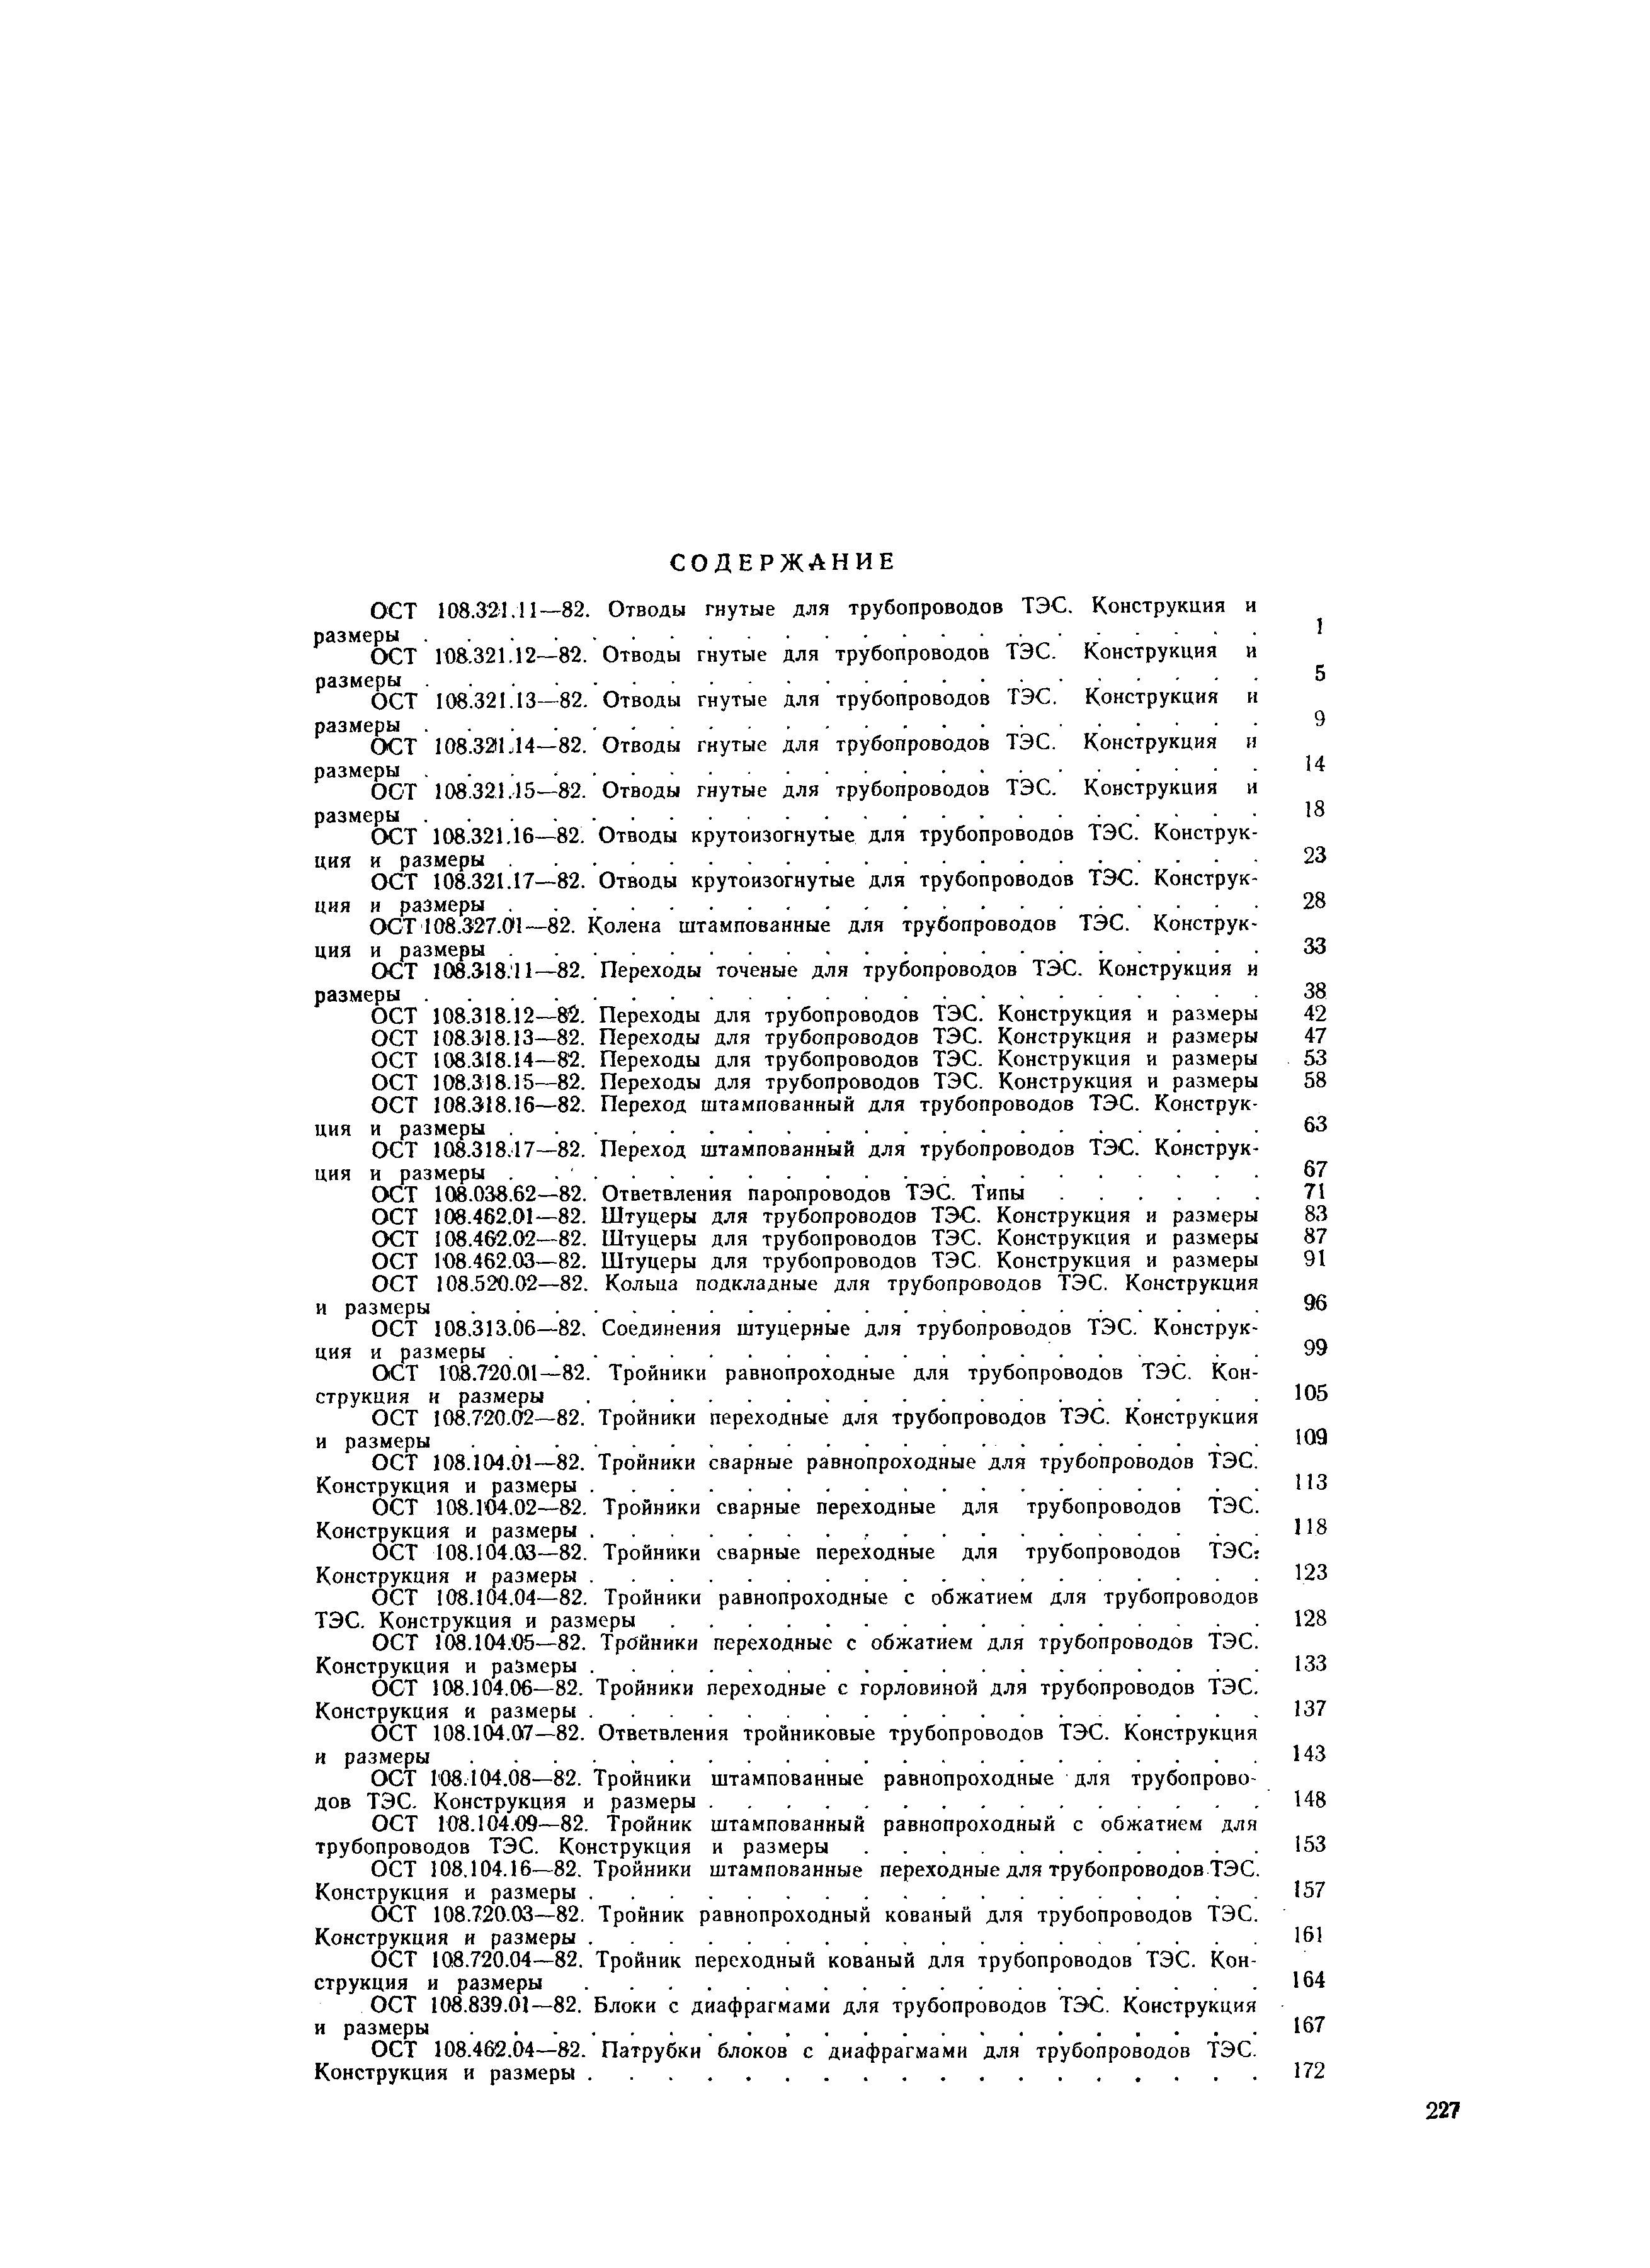 ОСТ 108.104.16-82